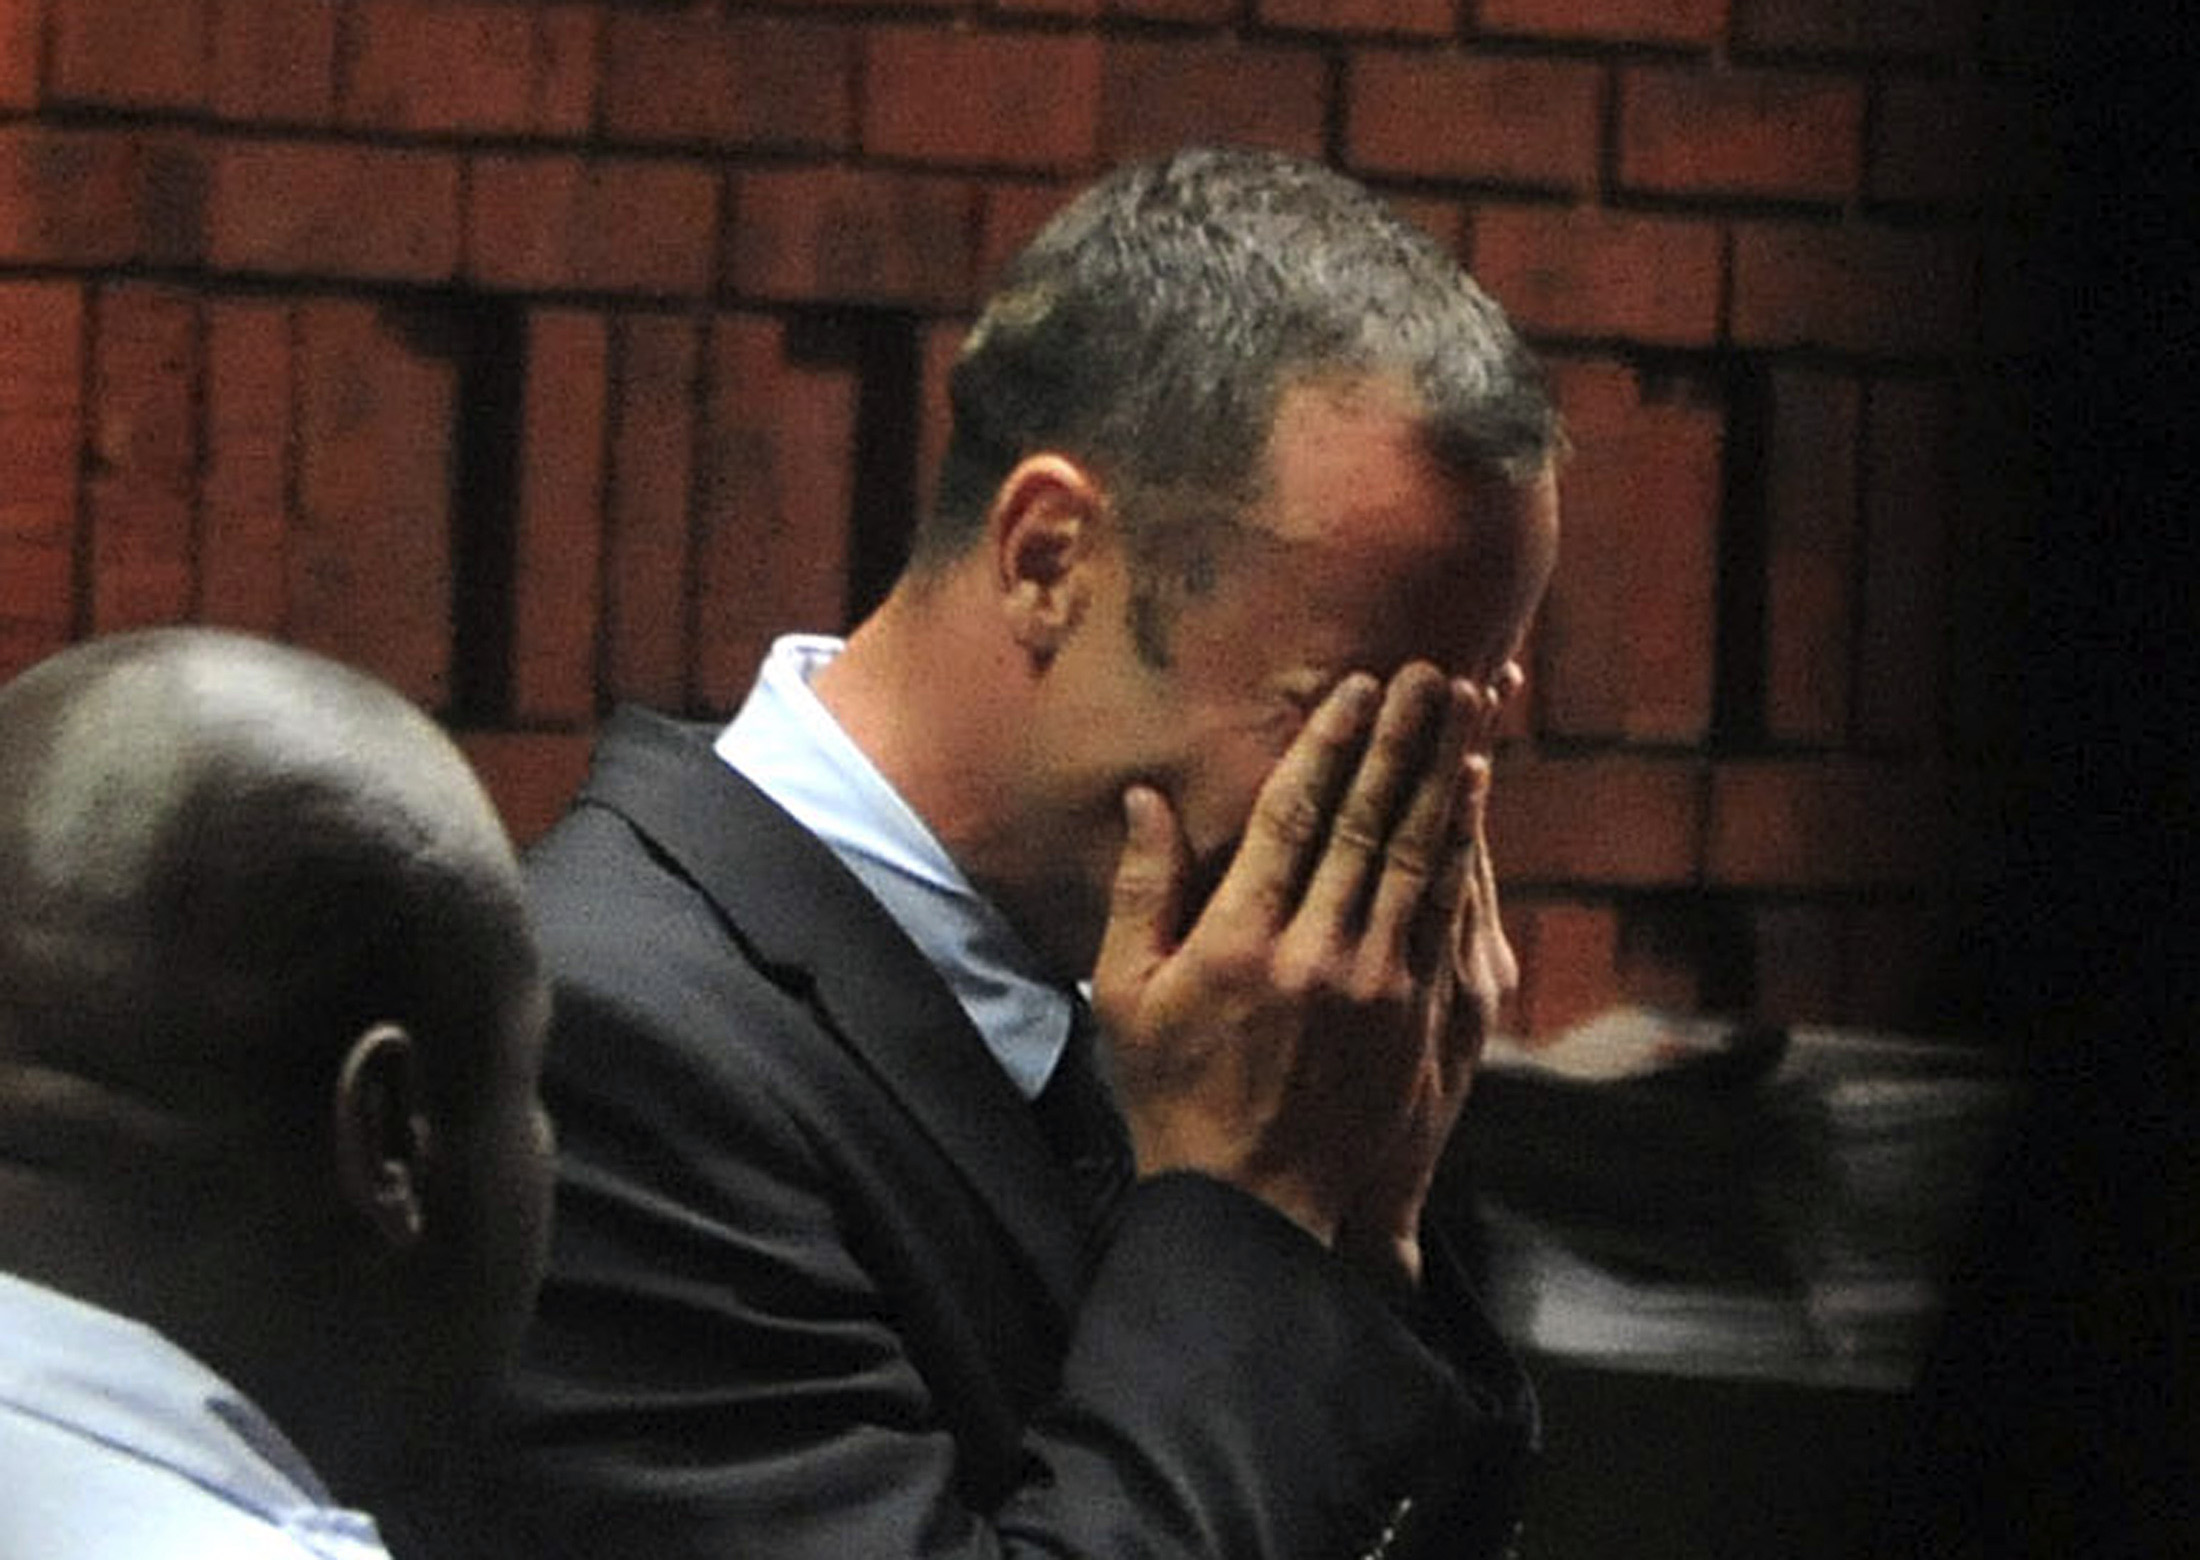 Salió a la luz conversación telefónica de Pistorius: maté a mi chica… Dios llévame